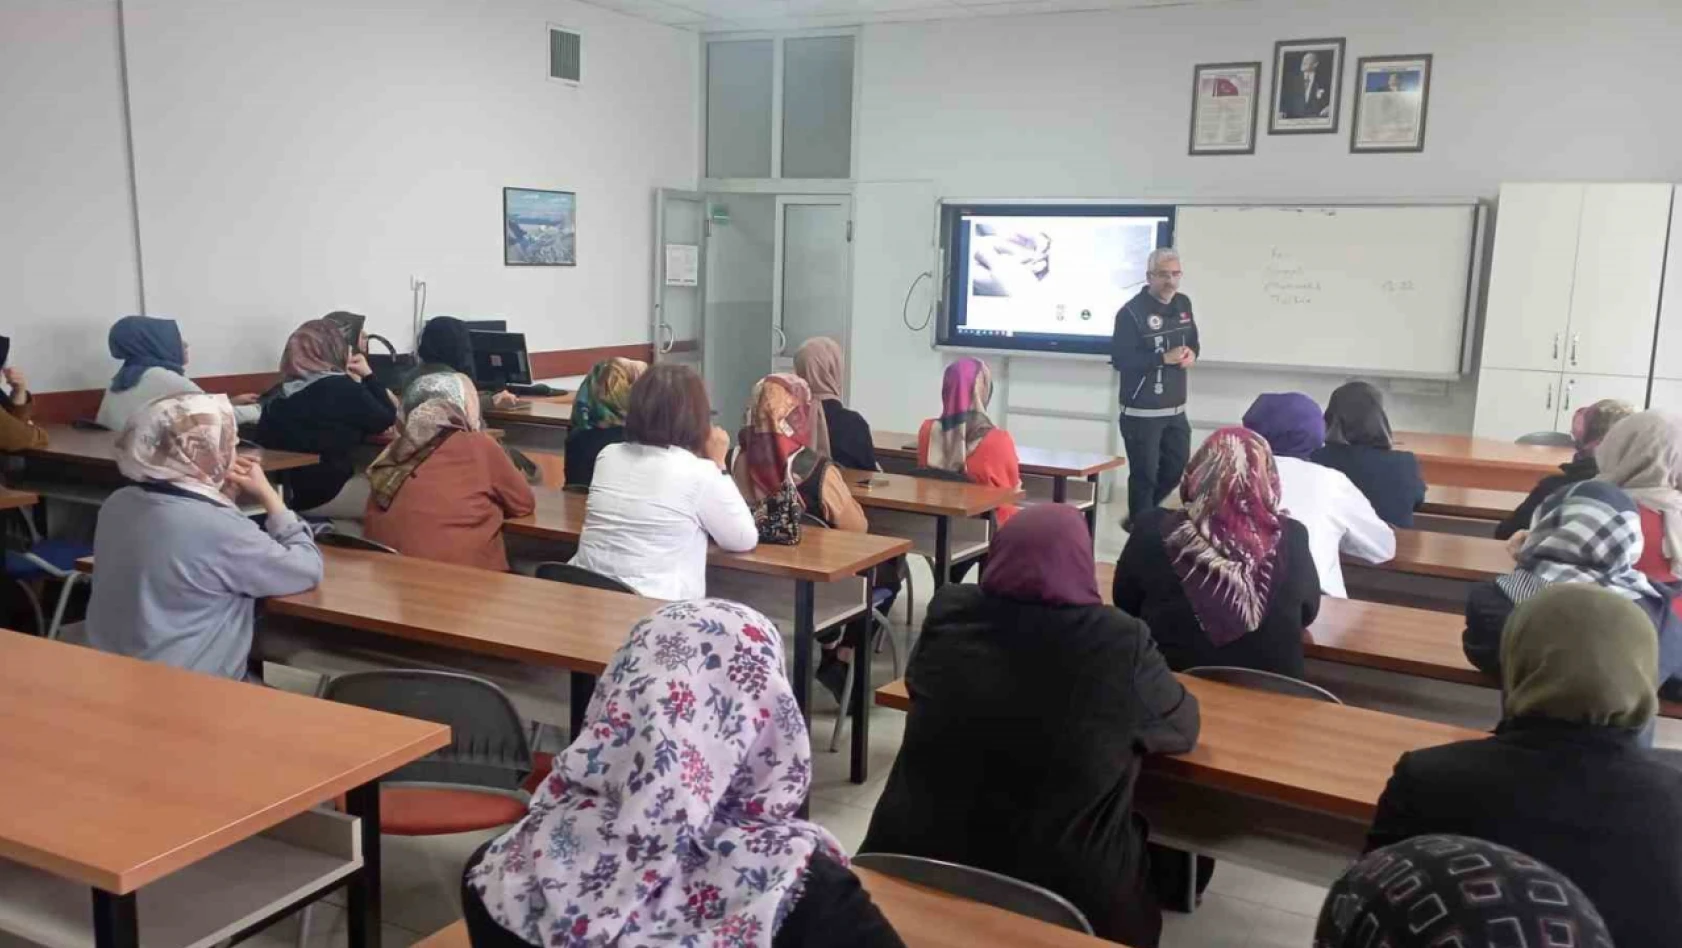 Elazığ'da 'Narkorehber' eğitimleri sürüyor